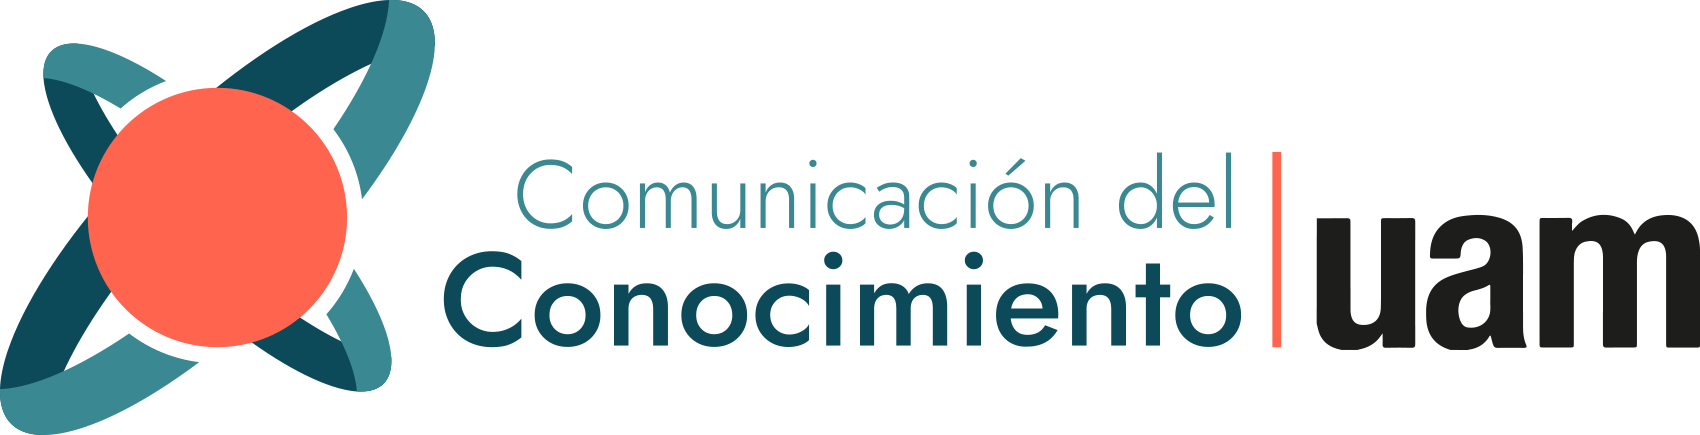 Logotipo Comunicación del Conocimiento